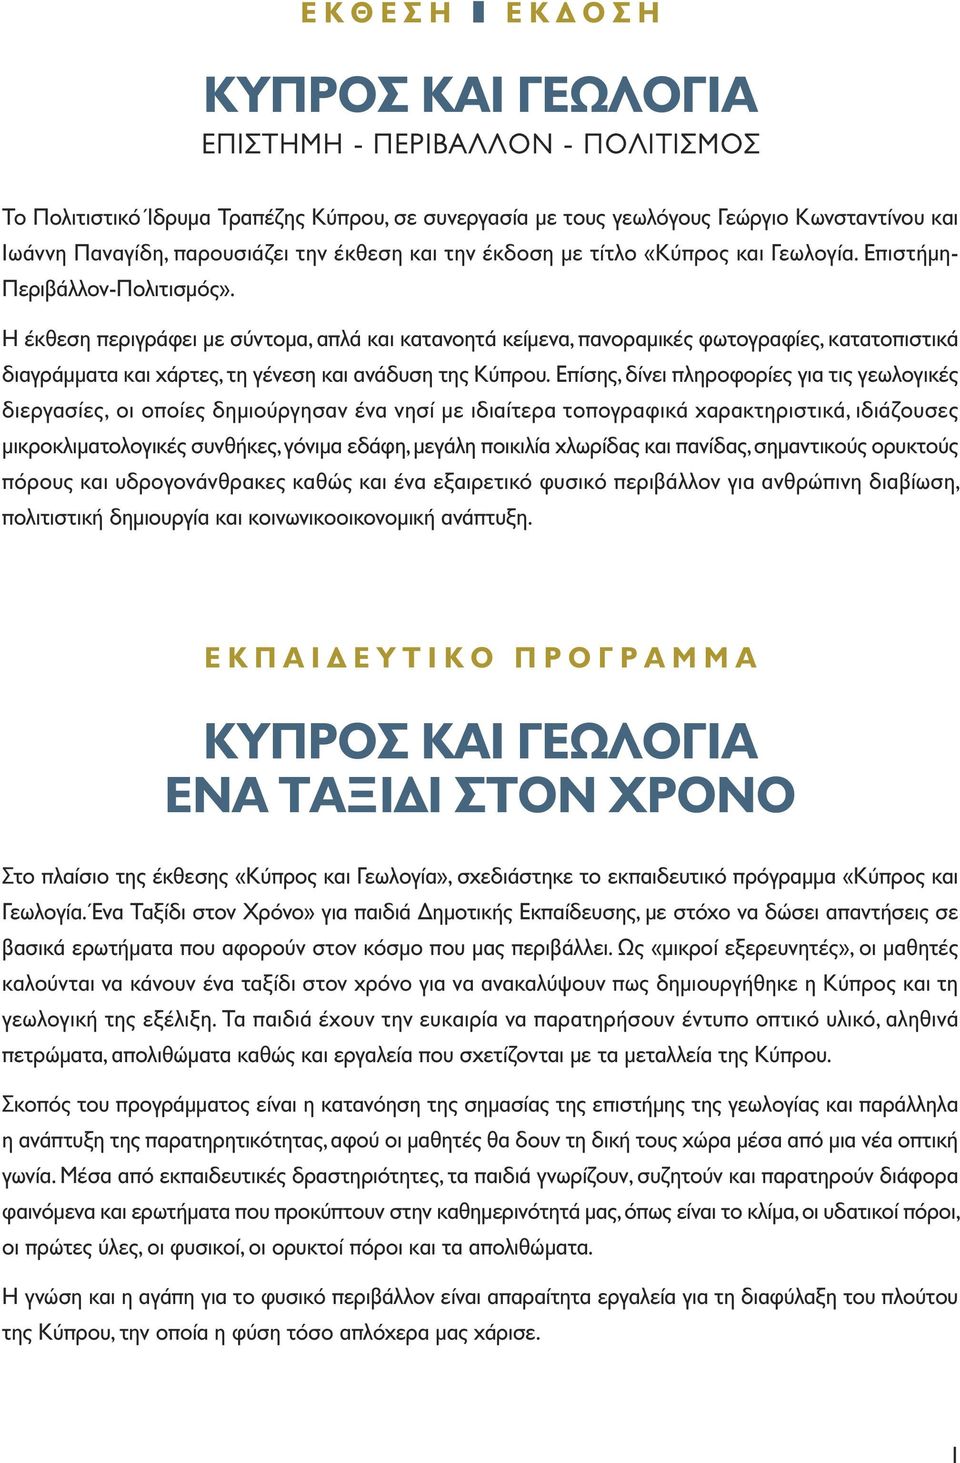 έκθεση και την έκδοση µε τίτλο «Κύπρος και Γεωλογία. Επιστήµη- Περιβάλλον-Πολιτισµός».